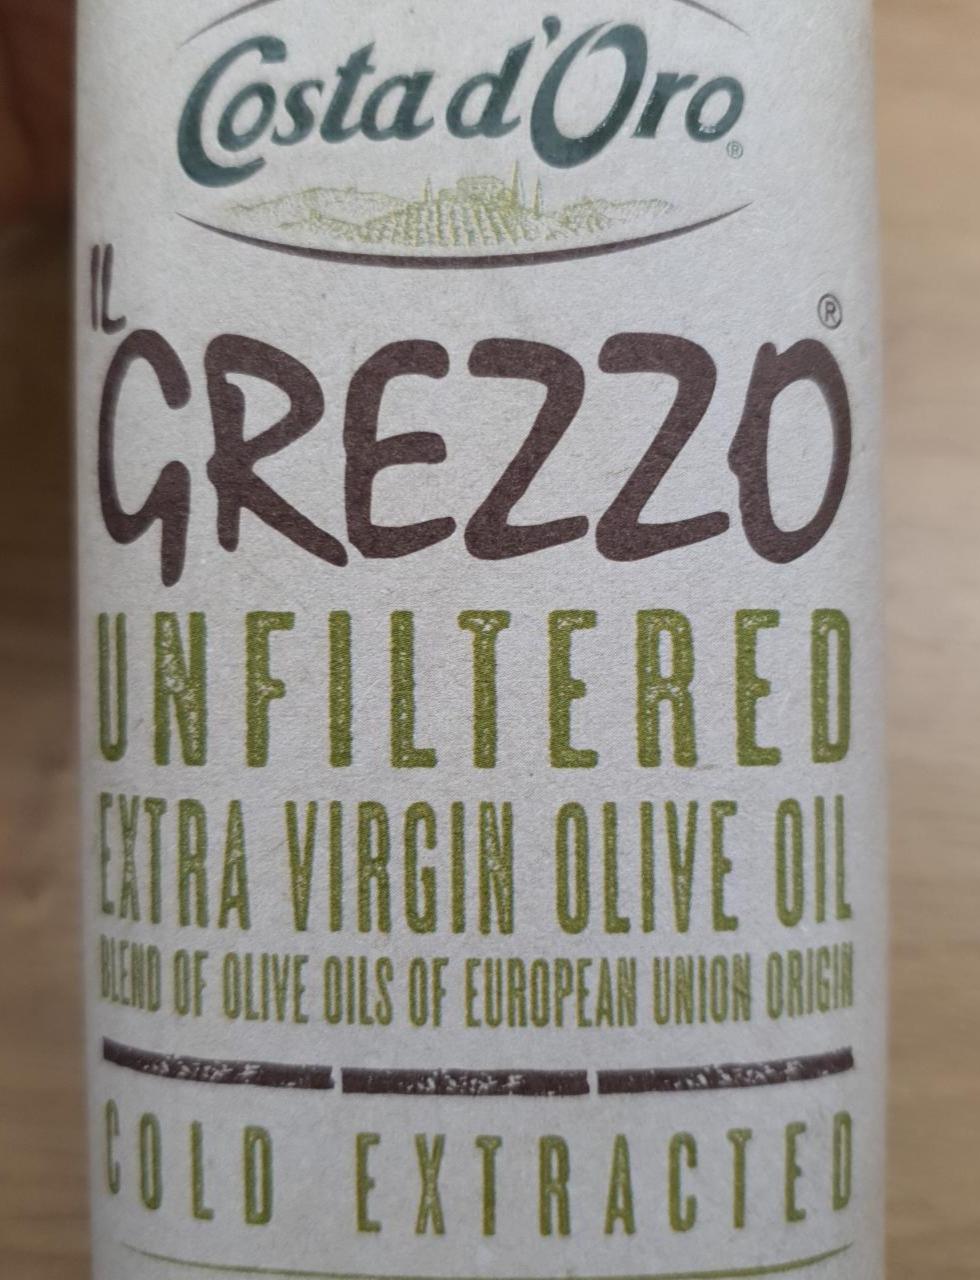 Fotografie - Il Grezzo Unfiltered Extra Virgin Olive Oil Costa d'Oro